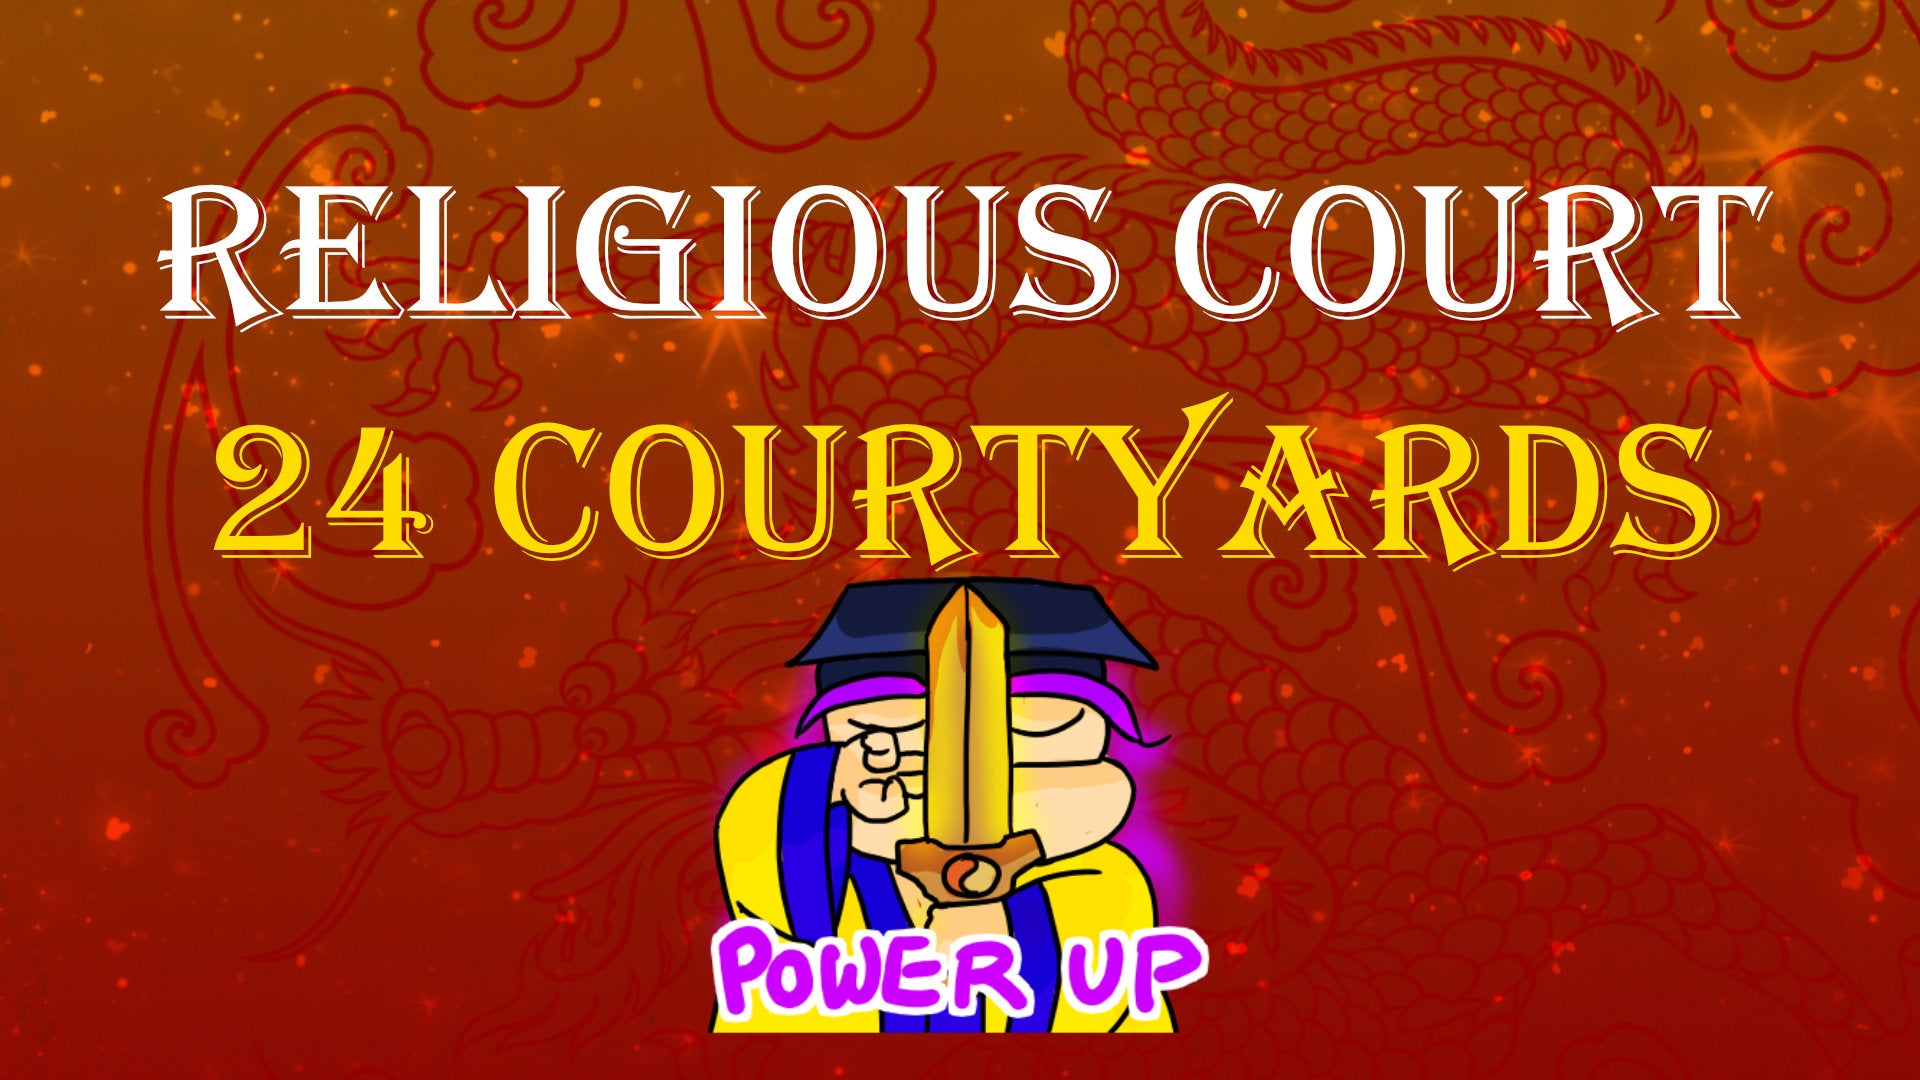 
          Twenty-Four Courtyards of the Religious Court
        